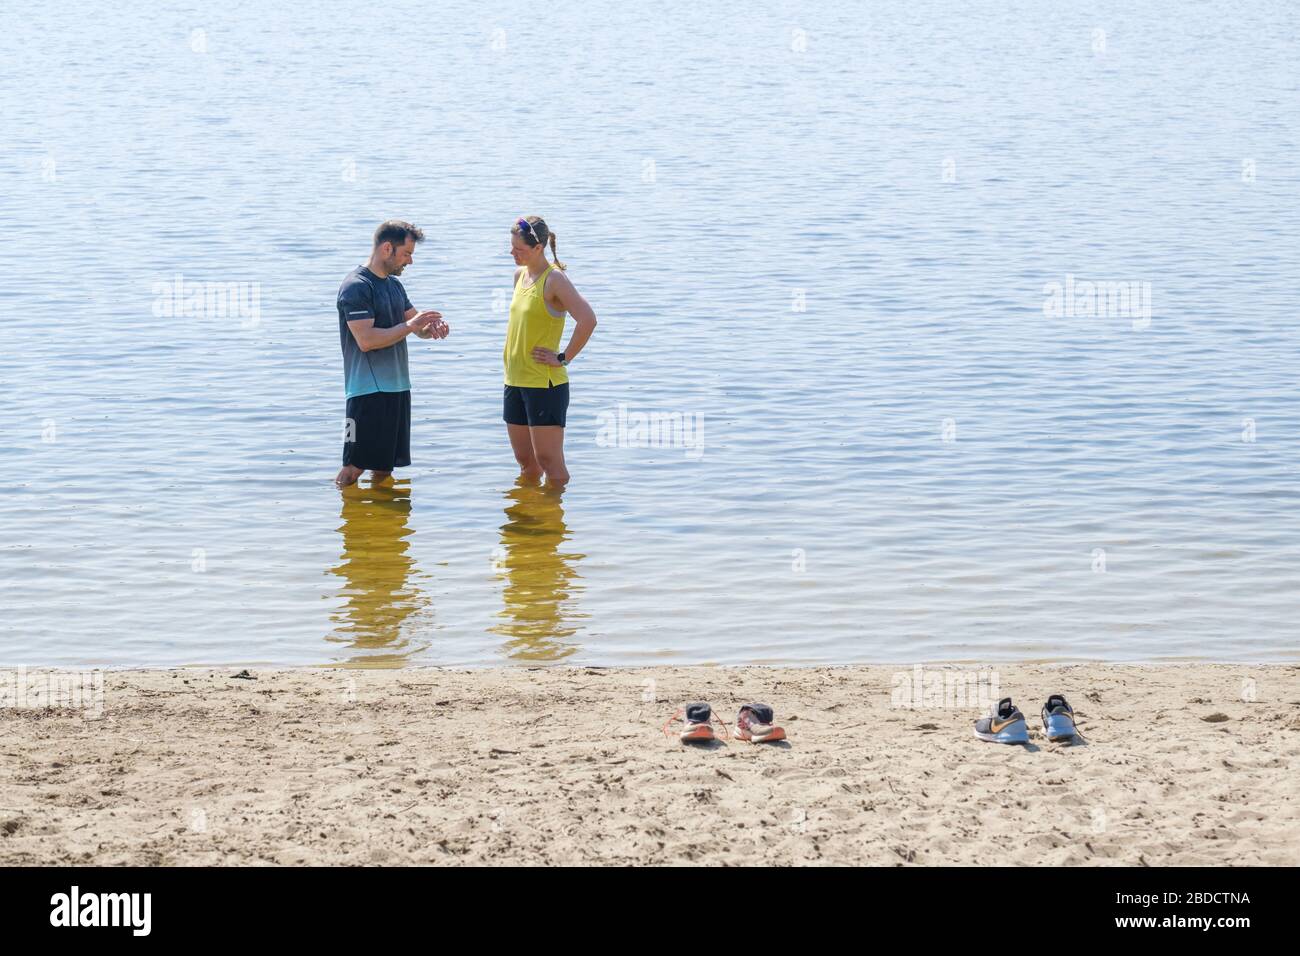 Hanovre, Allemagne. 08 avril 2020. Sabrina et Oliver se refroidissent après avoir fait du jogging dans le lac d'Altwarmbüchener. Crédit: OLE Spata/dpa/Alay Live News Banque D'Images